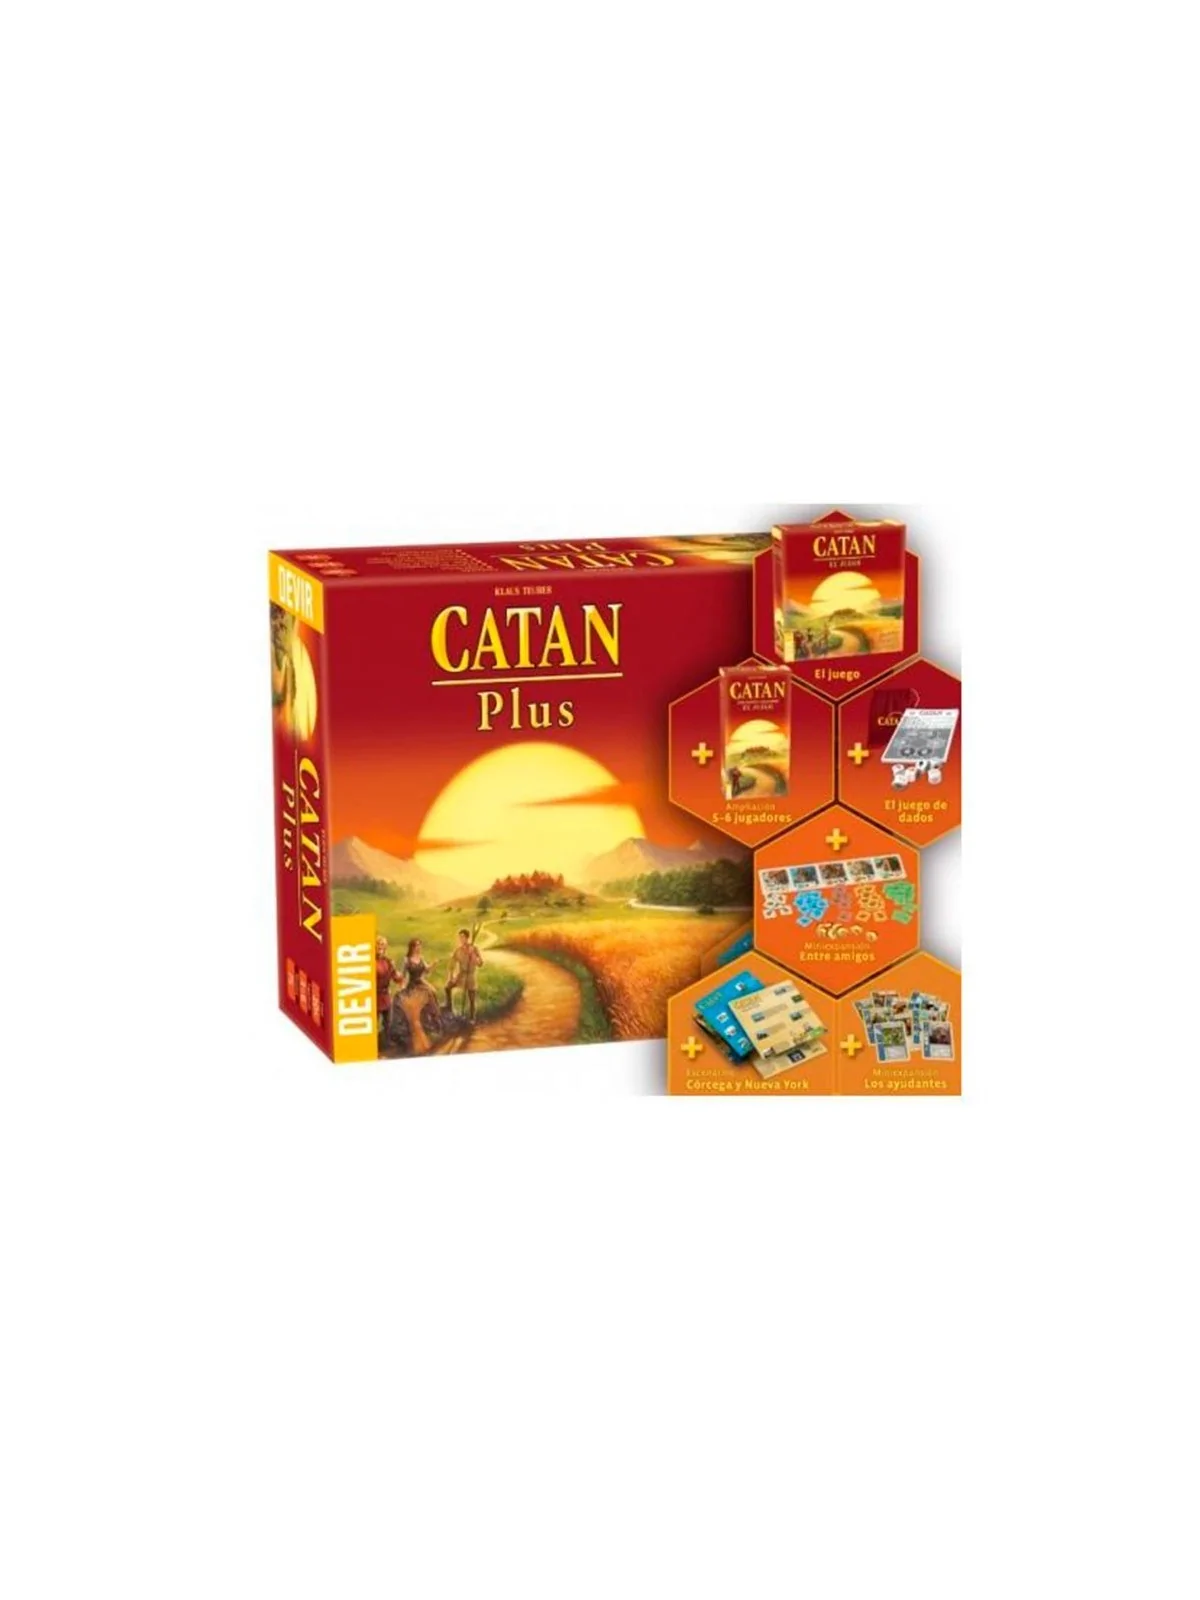 Comprar Catan Plus (ED. 2019) barato al mejor precio 63,90 € de Devir